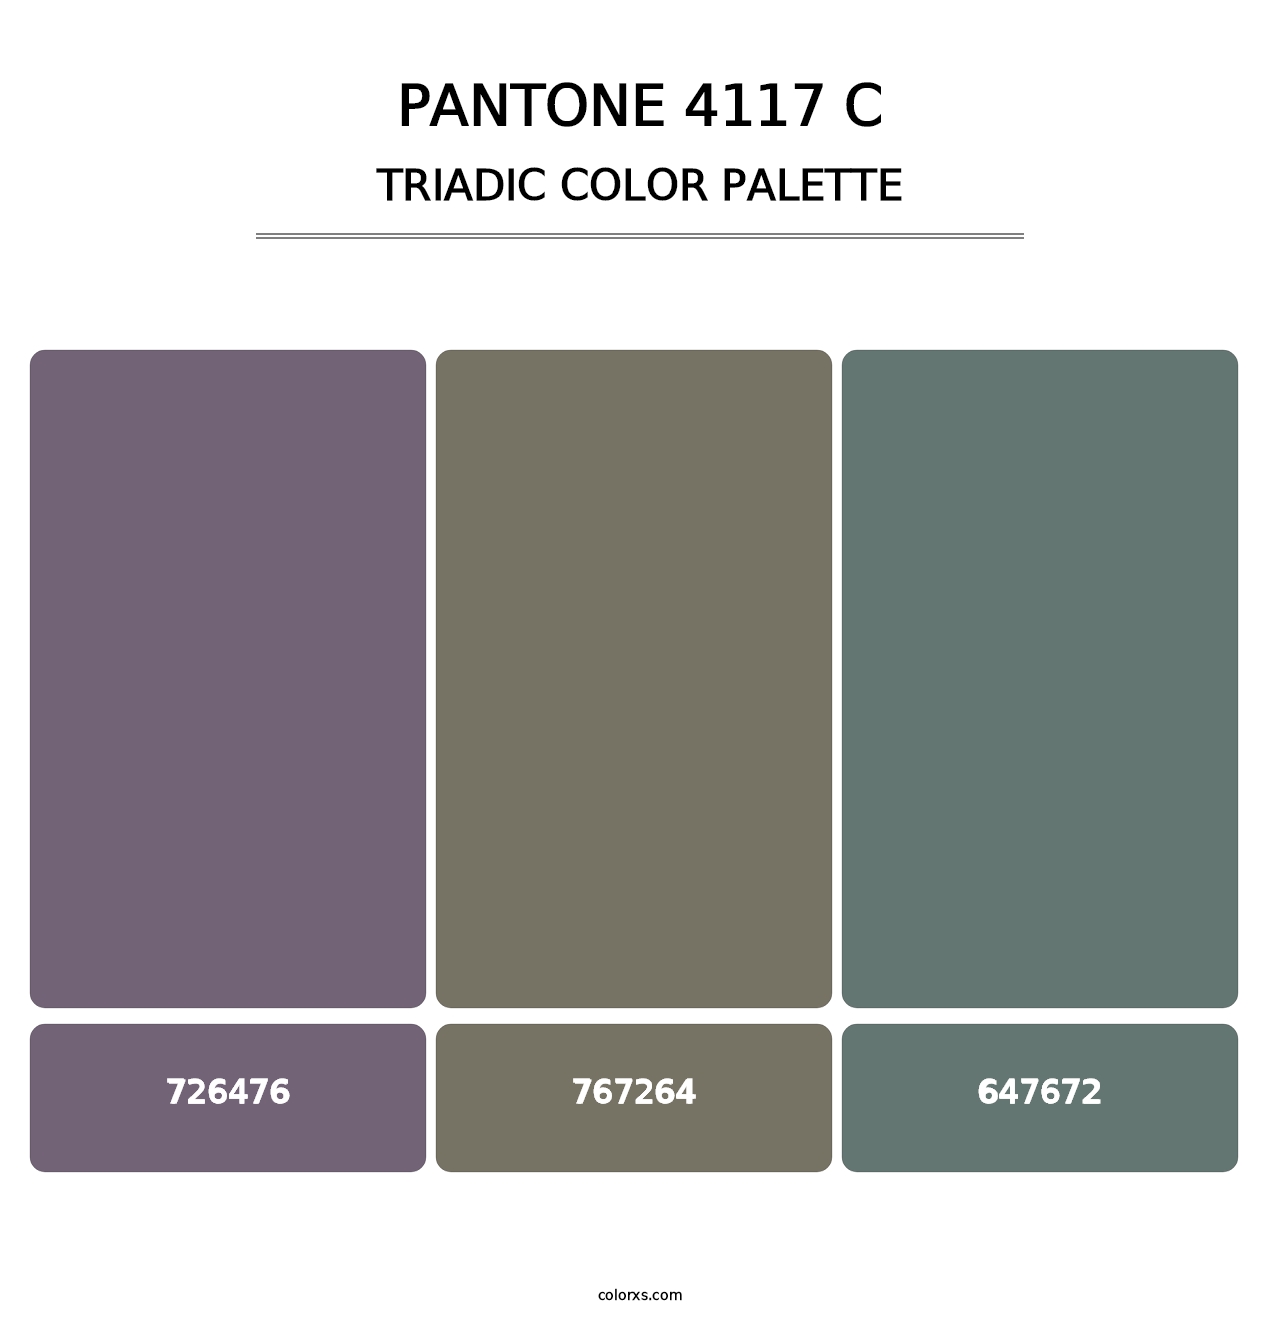 PANTONE 4117 C - Triadic Color Palette